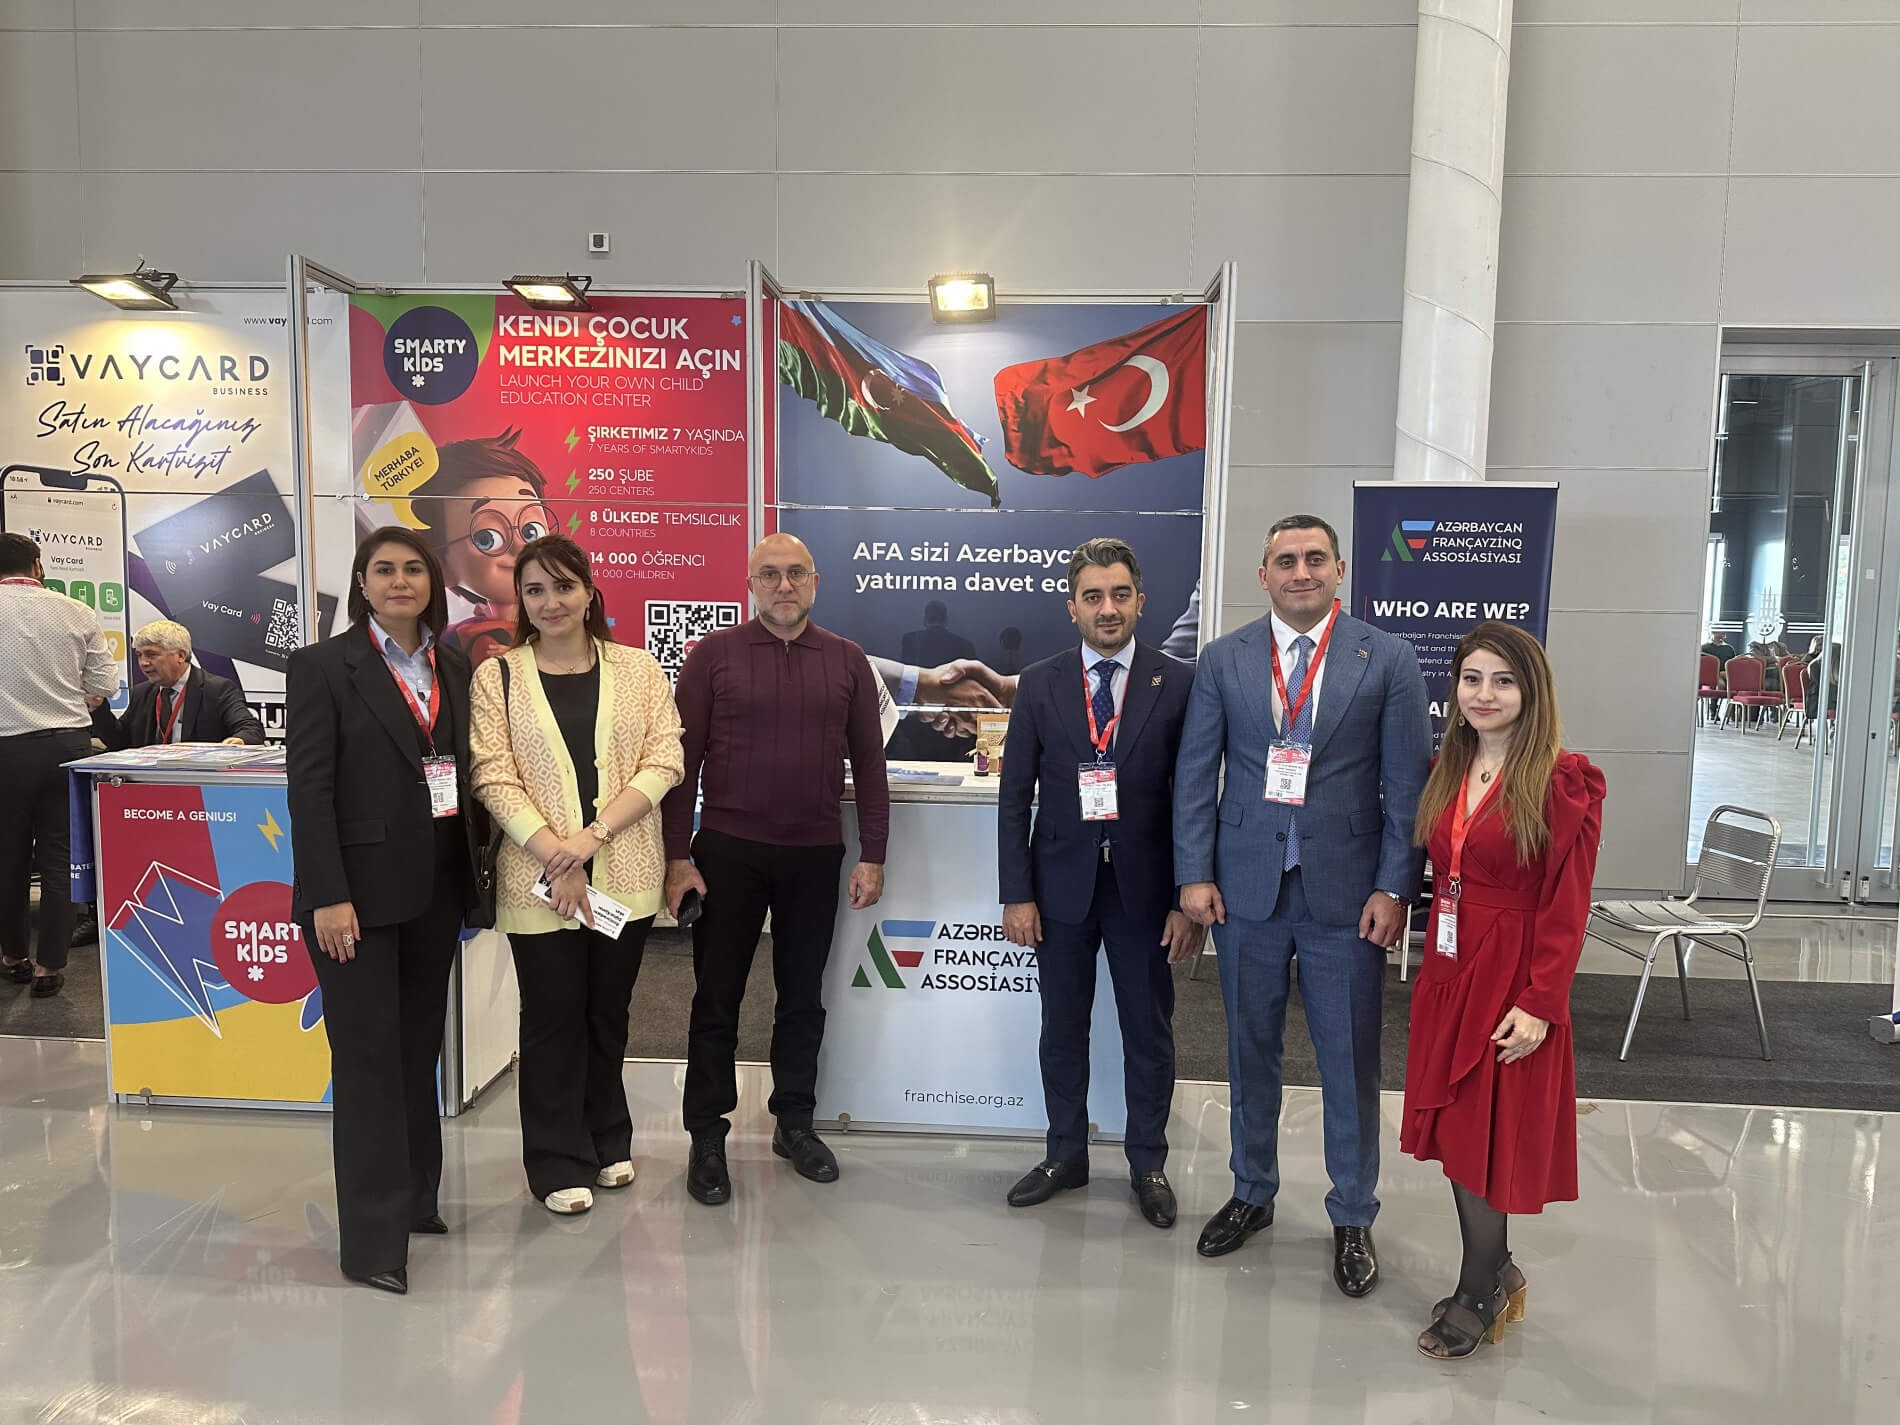 Заместитель председателя KOBIA и руководитель KOBSKA посетили стенд Азербайджанской Франчайзинговой Ассоциации на форуме «Bayim Olurmusun».